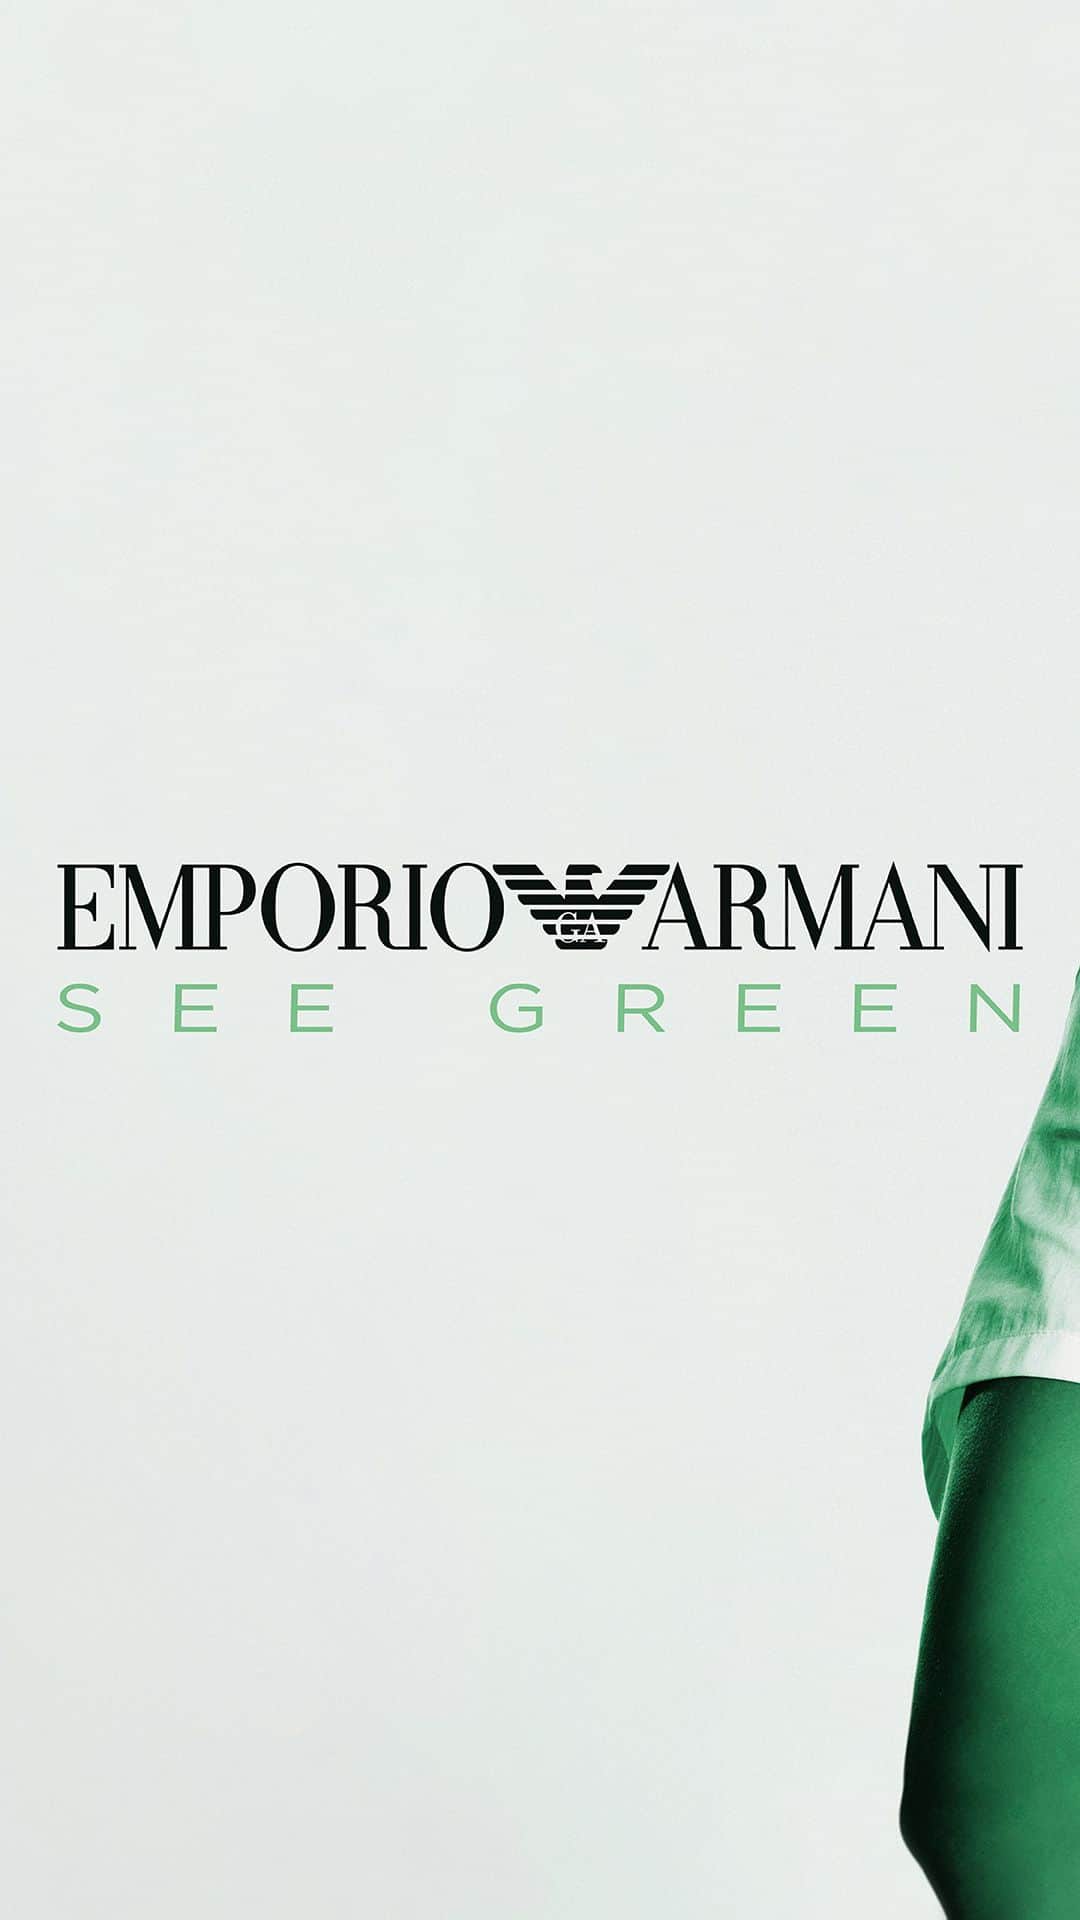 Armani Officialのインスタグラム